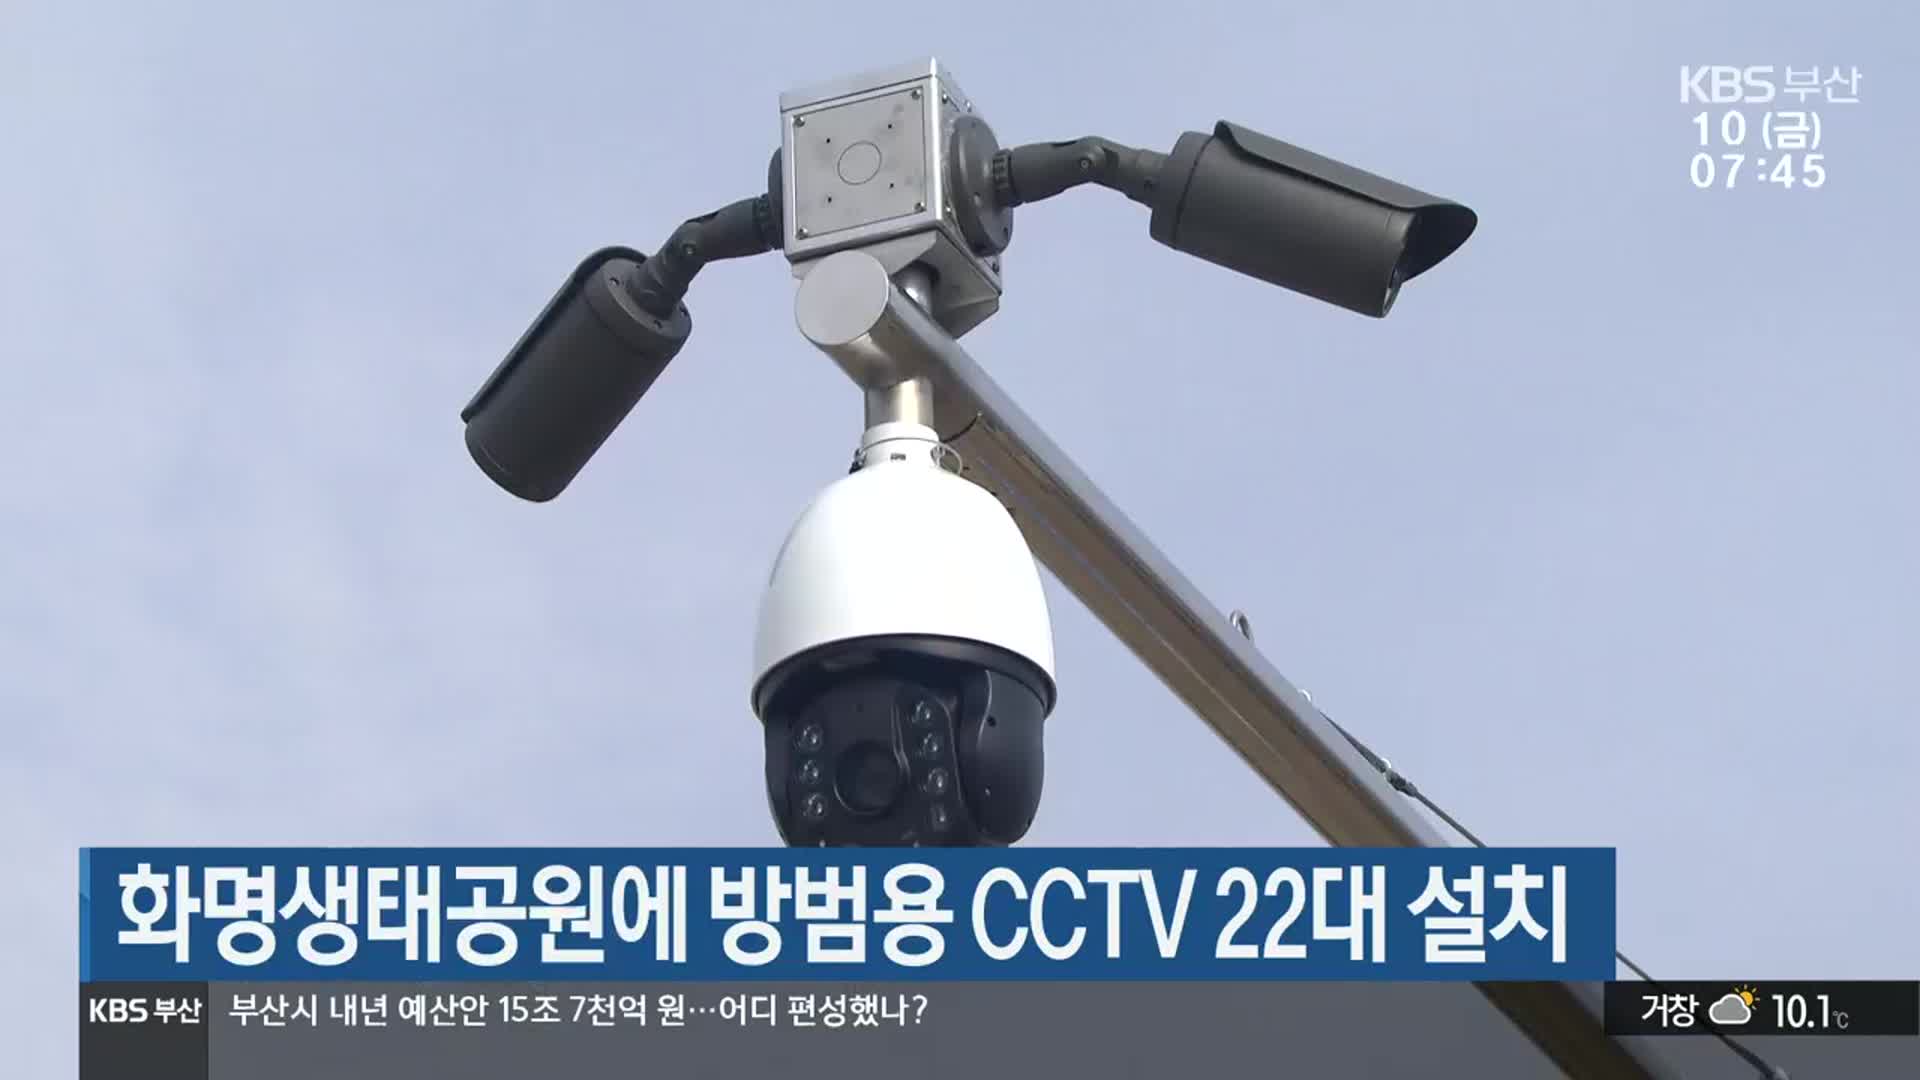 화명생태공원에 방범용 CCTV 22대 설치